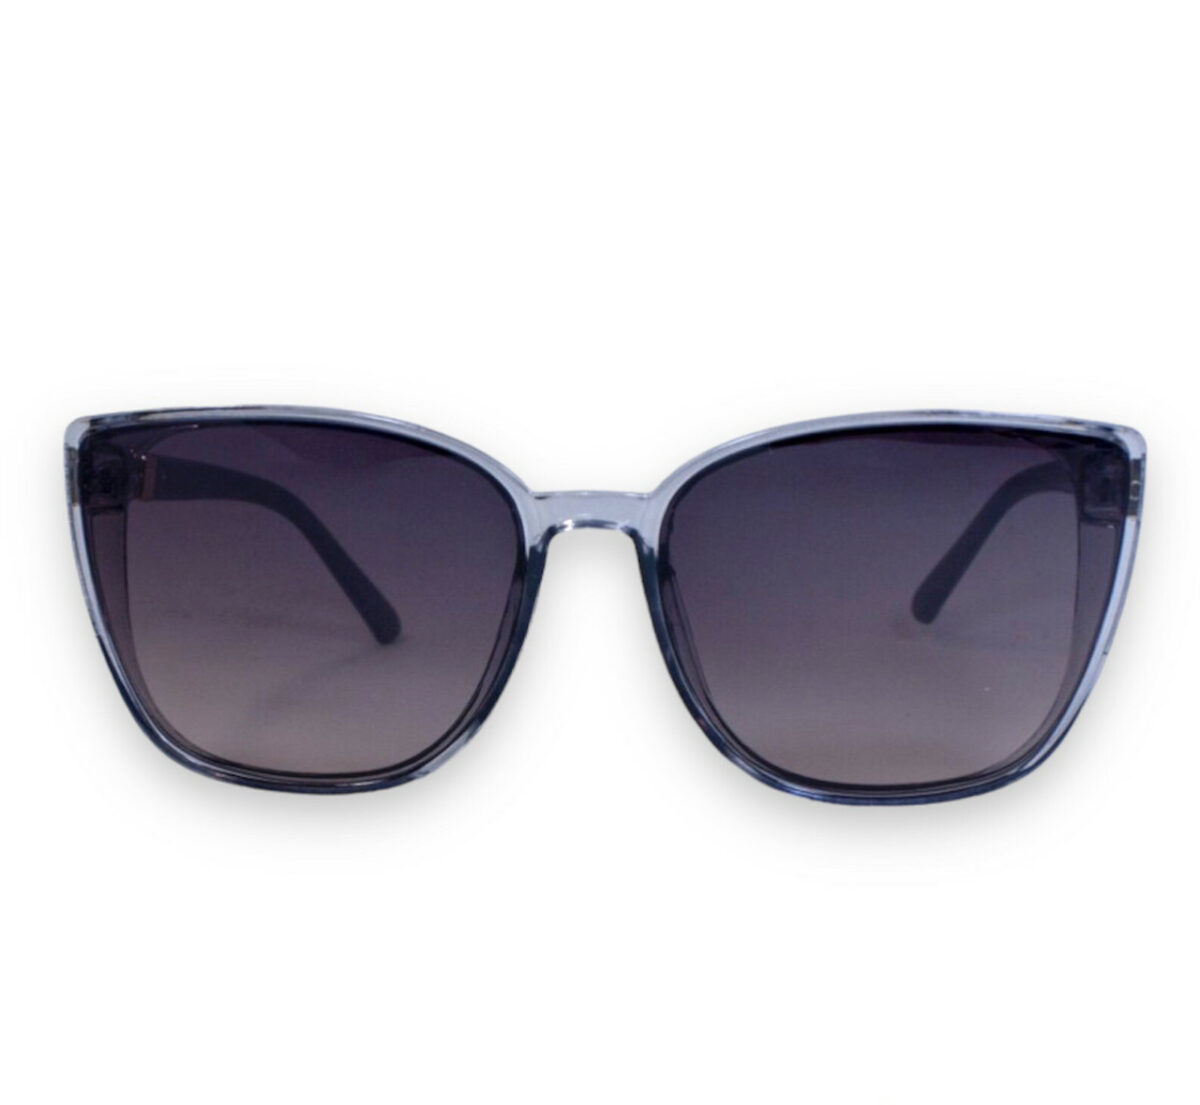 Сонцезахисні жіночі окуляри 2166-3 topseason Cardeo